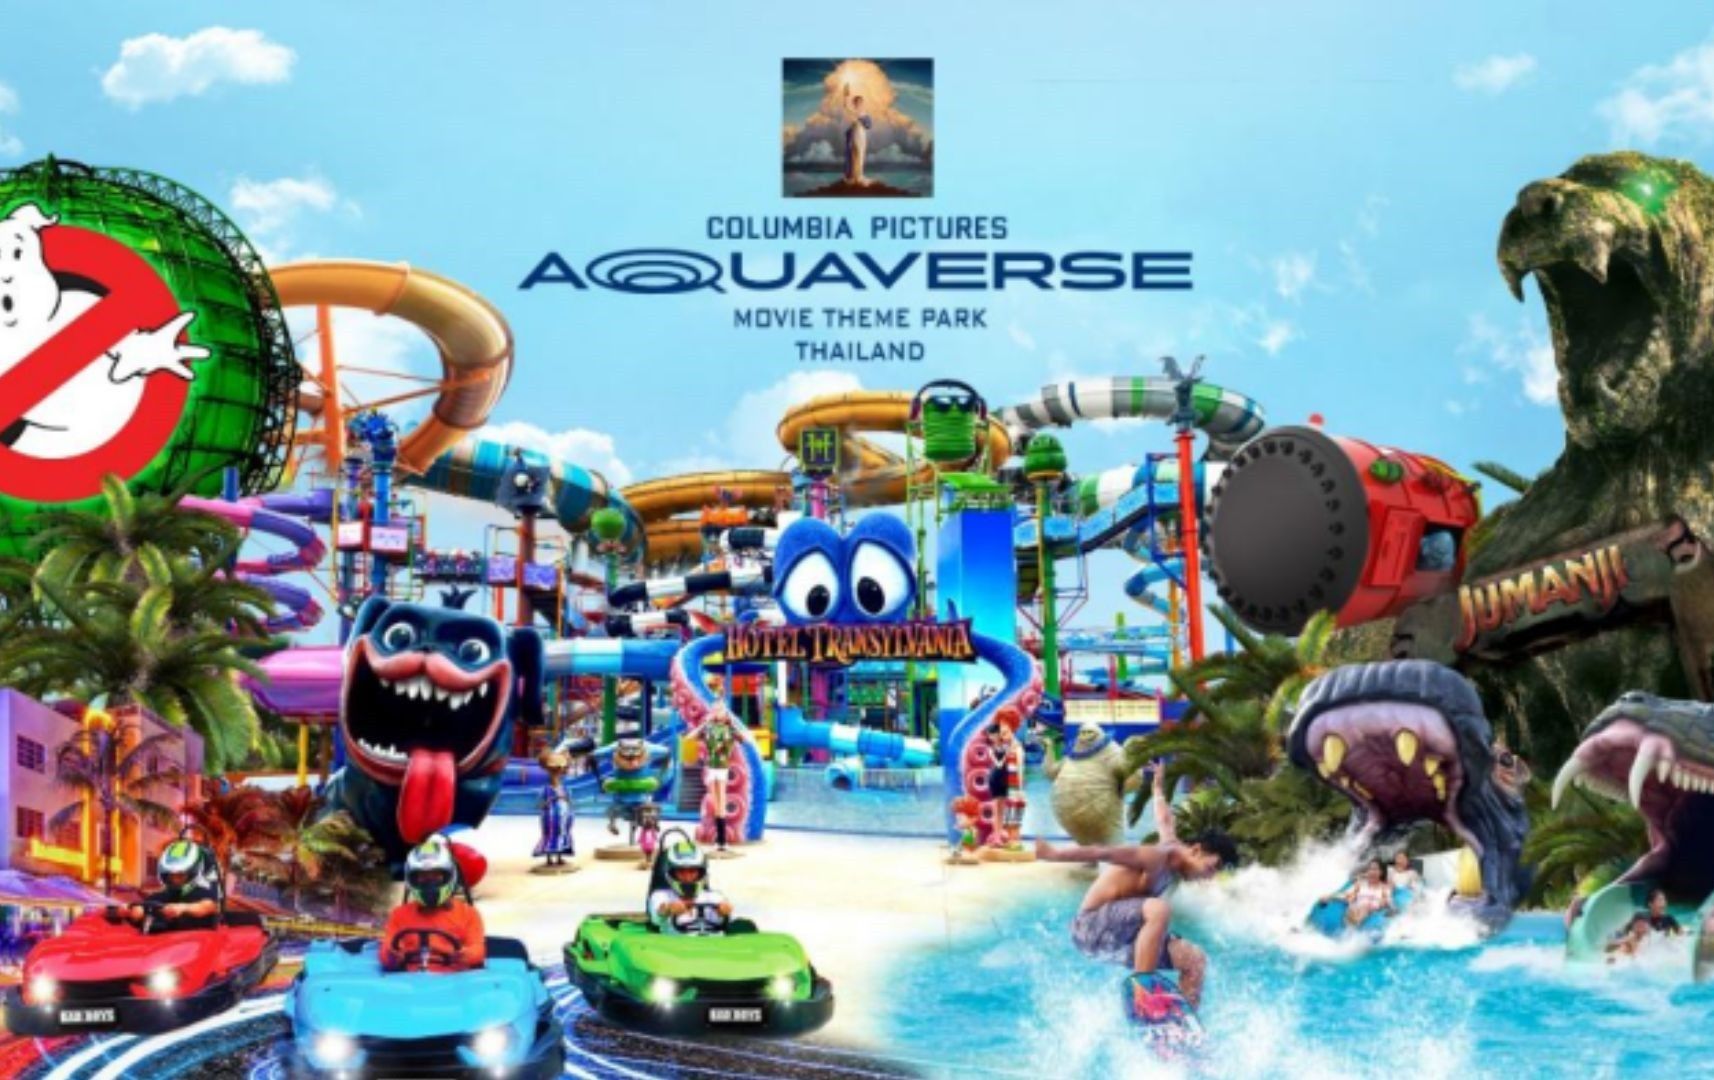 Taman hiburan film ‘Aquaverse’ dibuka di Thailand Oktober ini